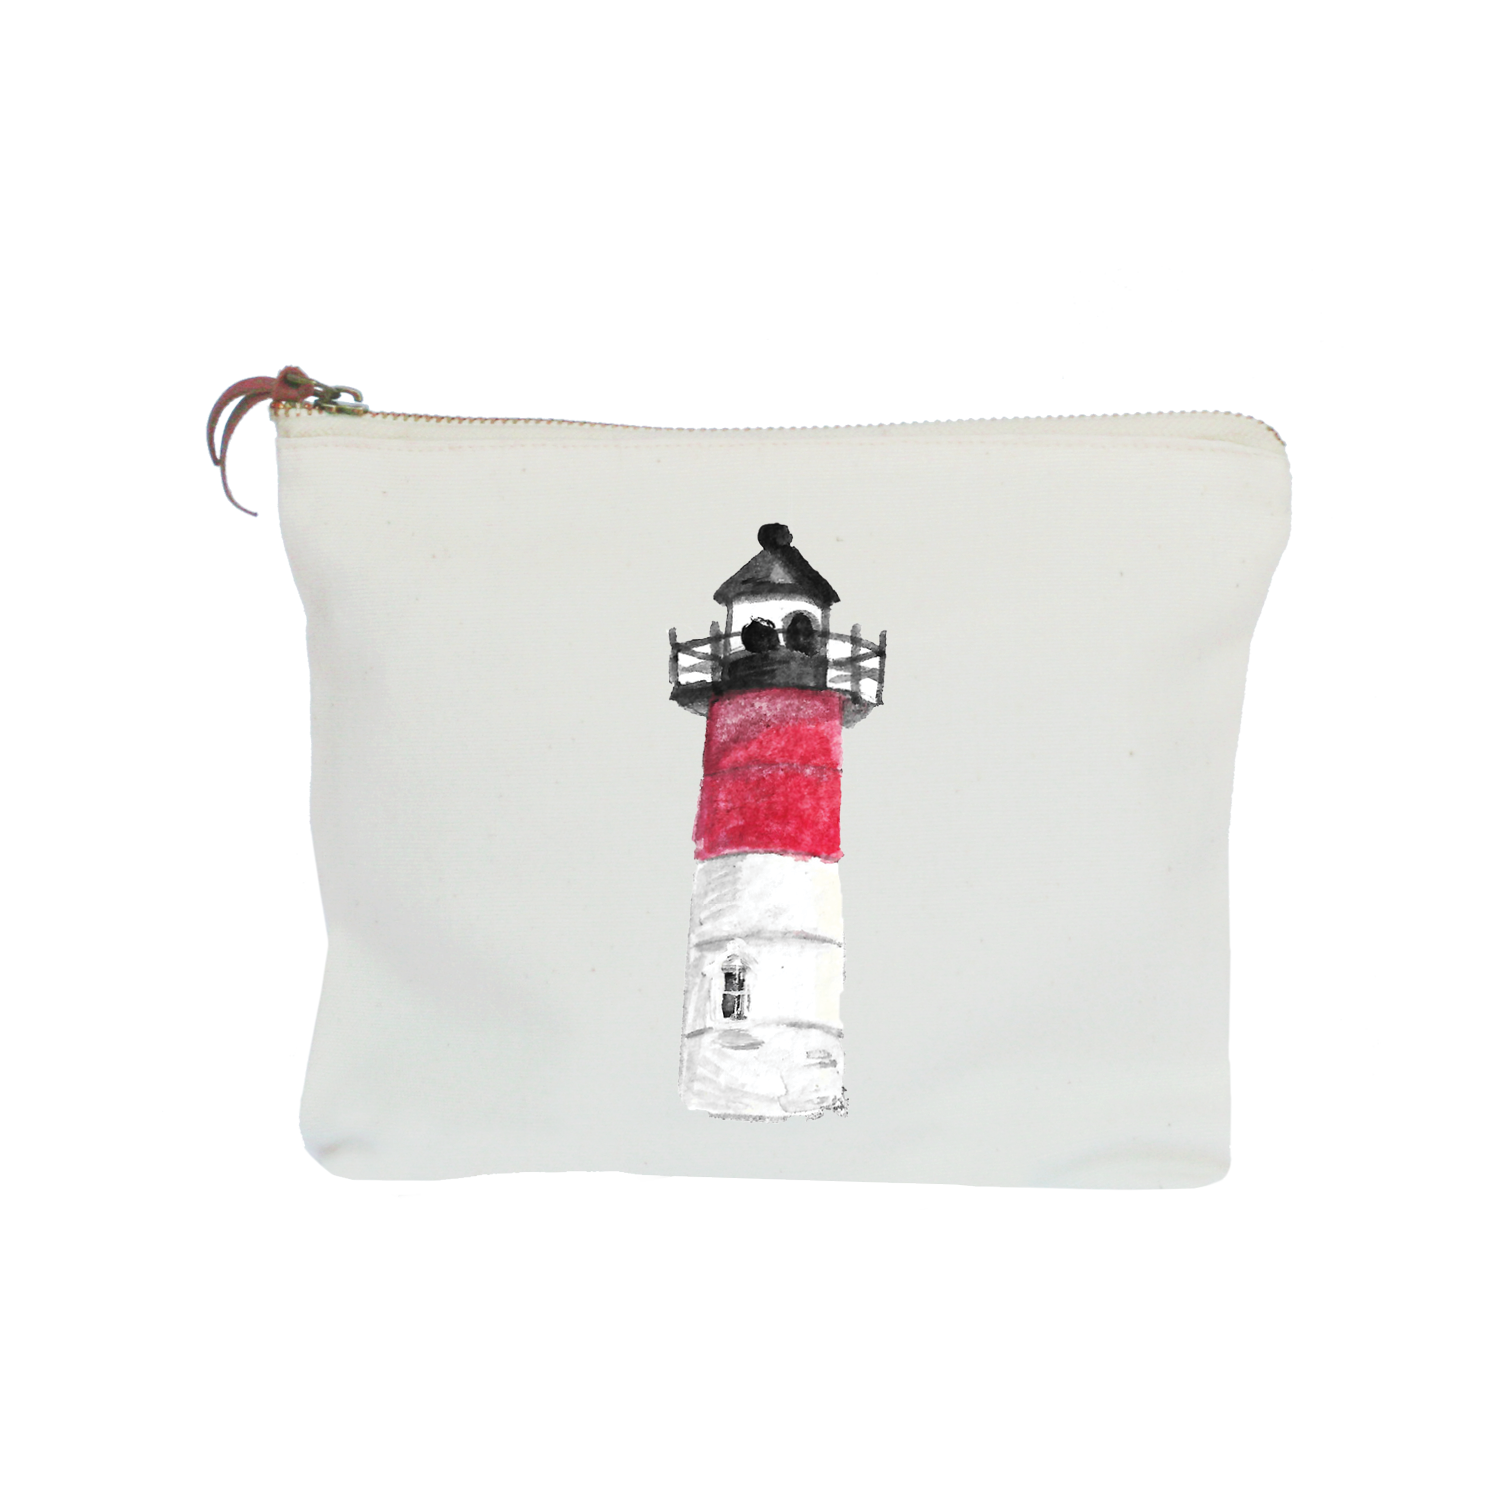 wellfleet lighthouse zipper pouch